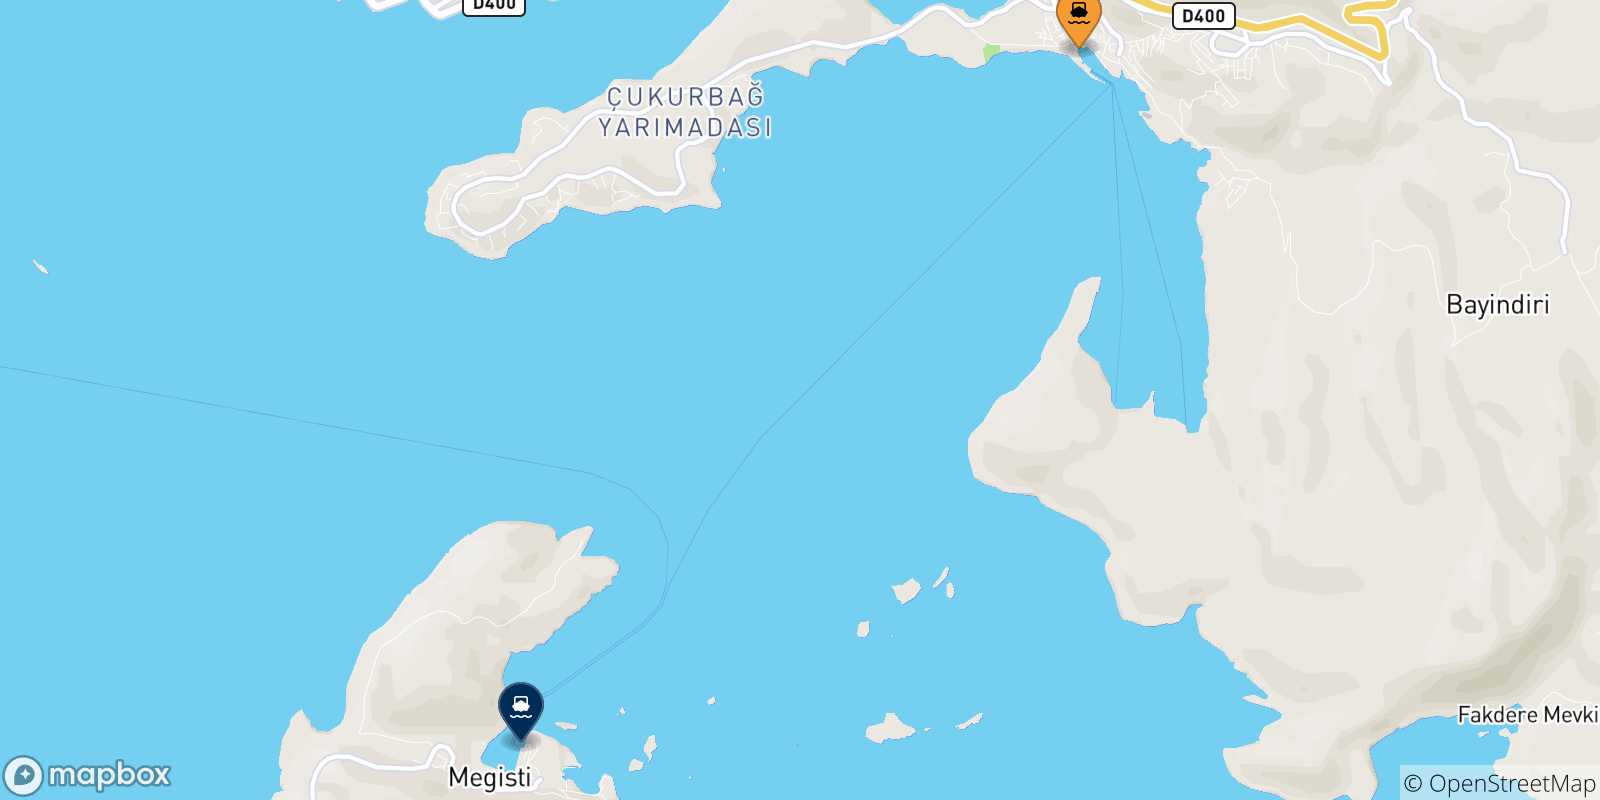 Mappa delle possibili rotte tra Kas e le Isole Dodecaneso